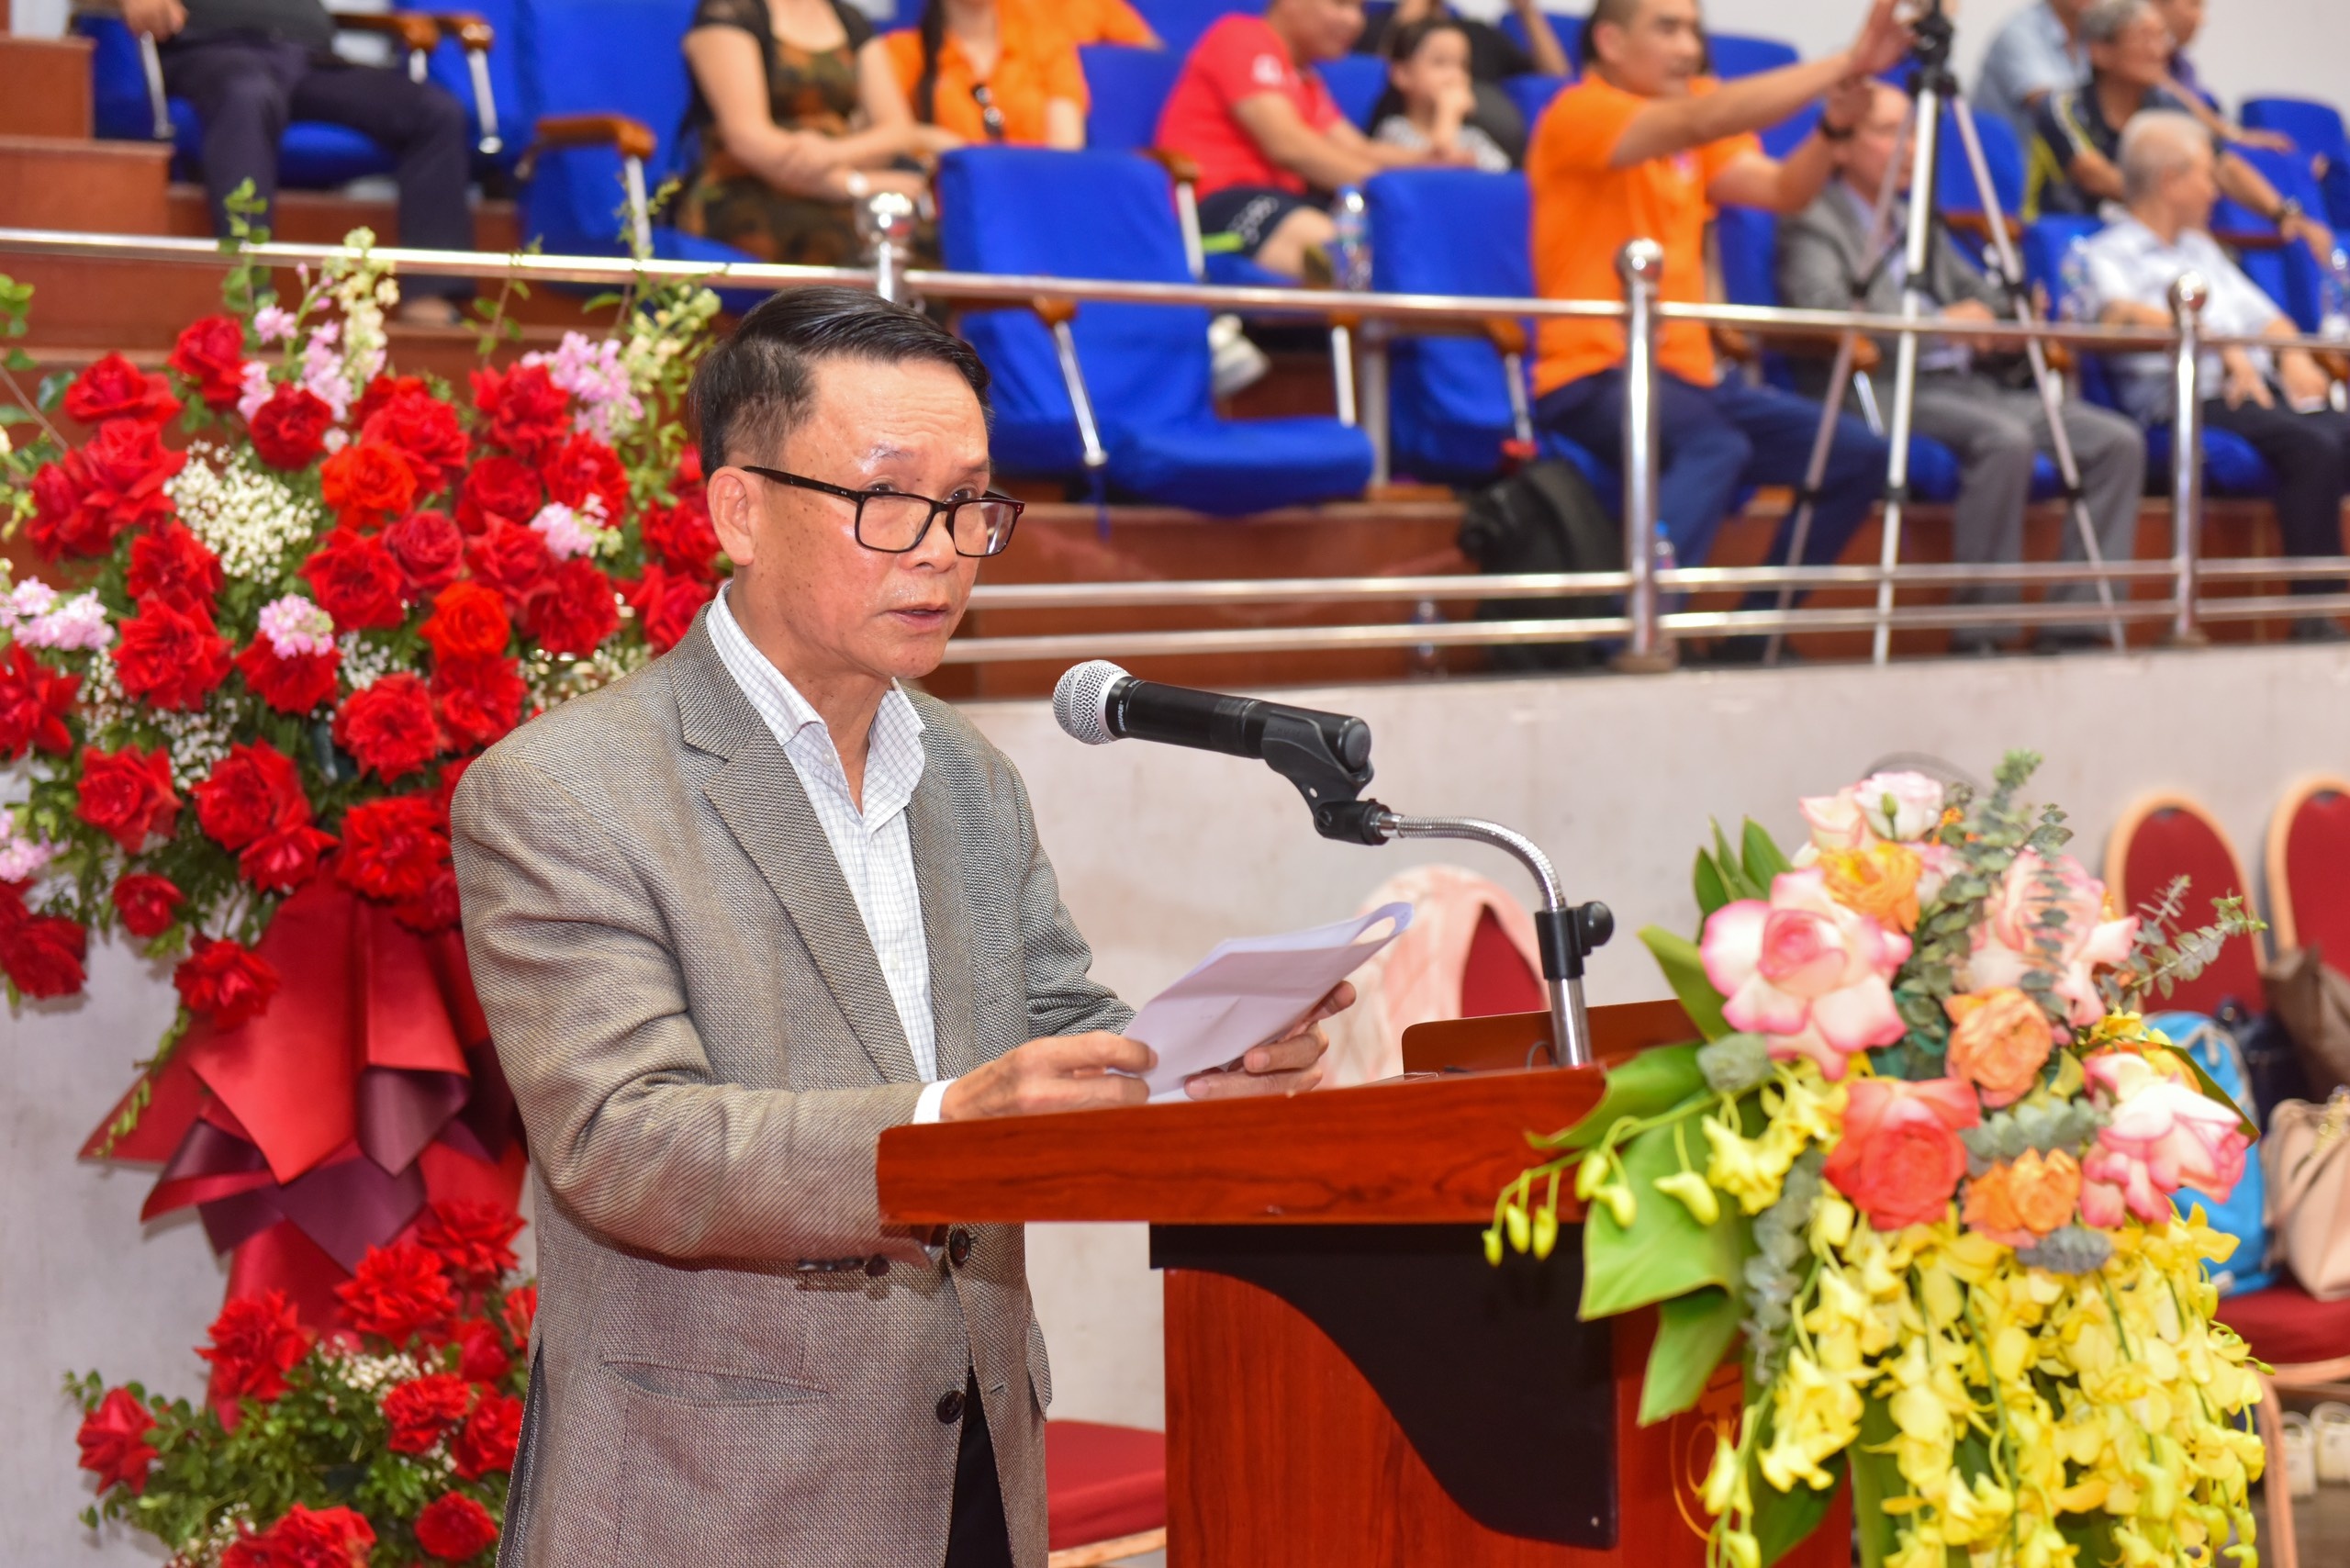 Đồng chí Nguyễn Đức Lợi - Phó Chủ tịch Thường trực Hội Nhà báo Việt Nam, Trưởng ban tổ chức Giải phát biểu bế mạc Giải